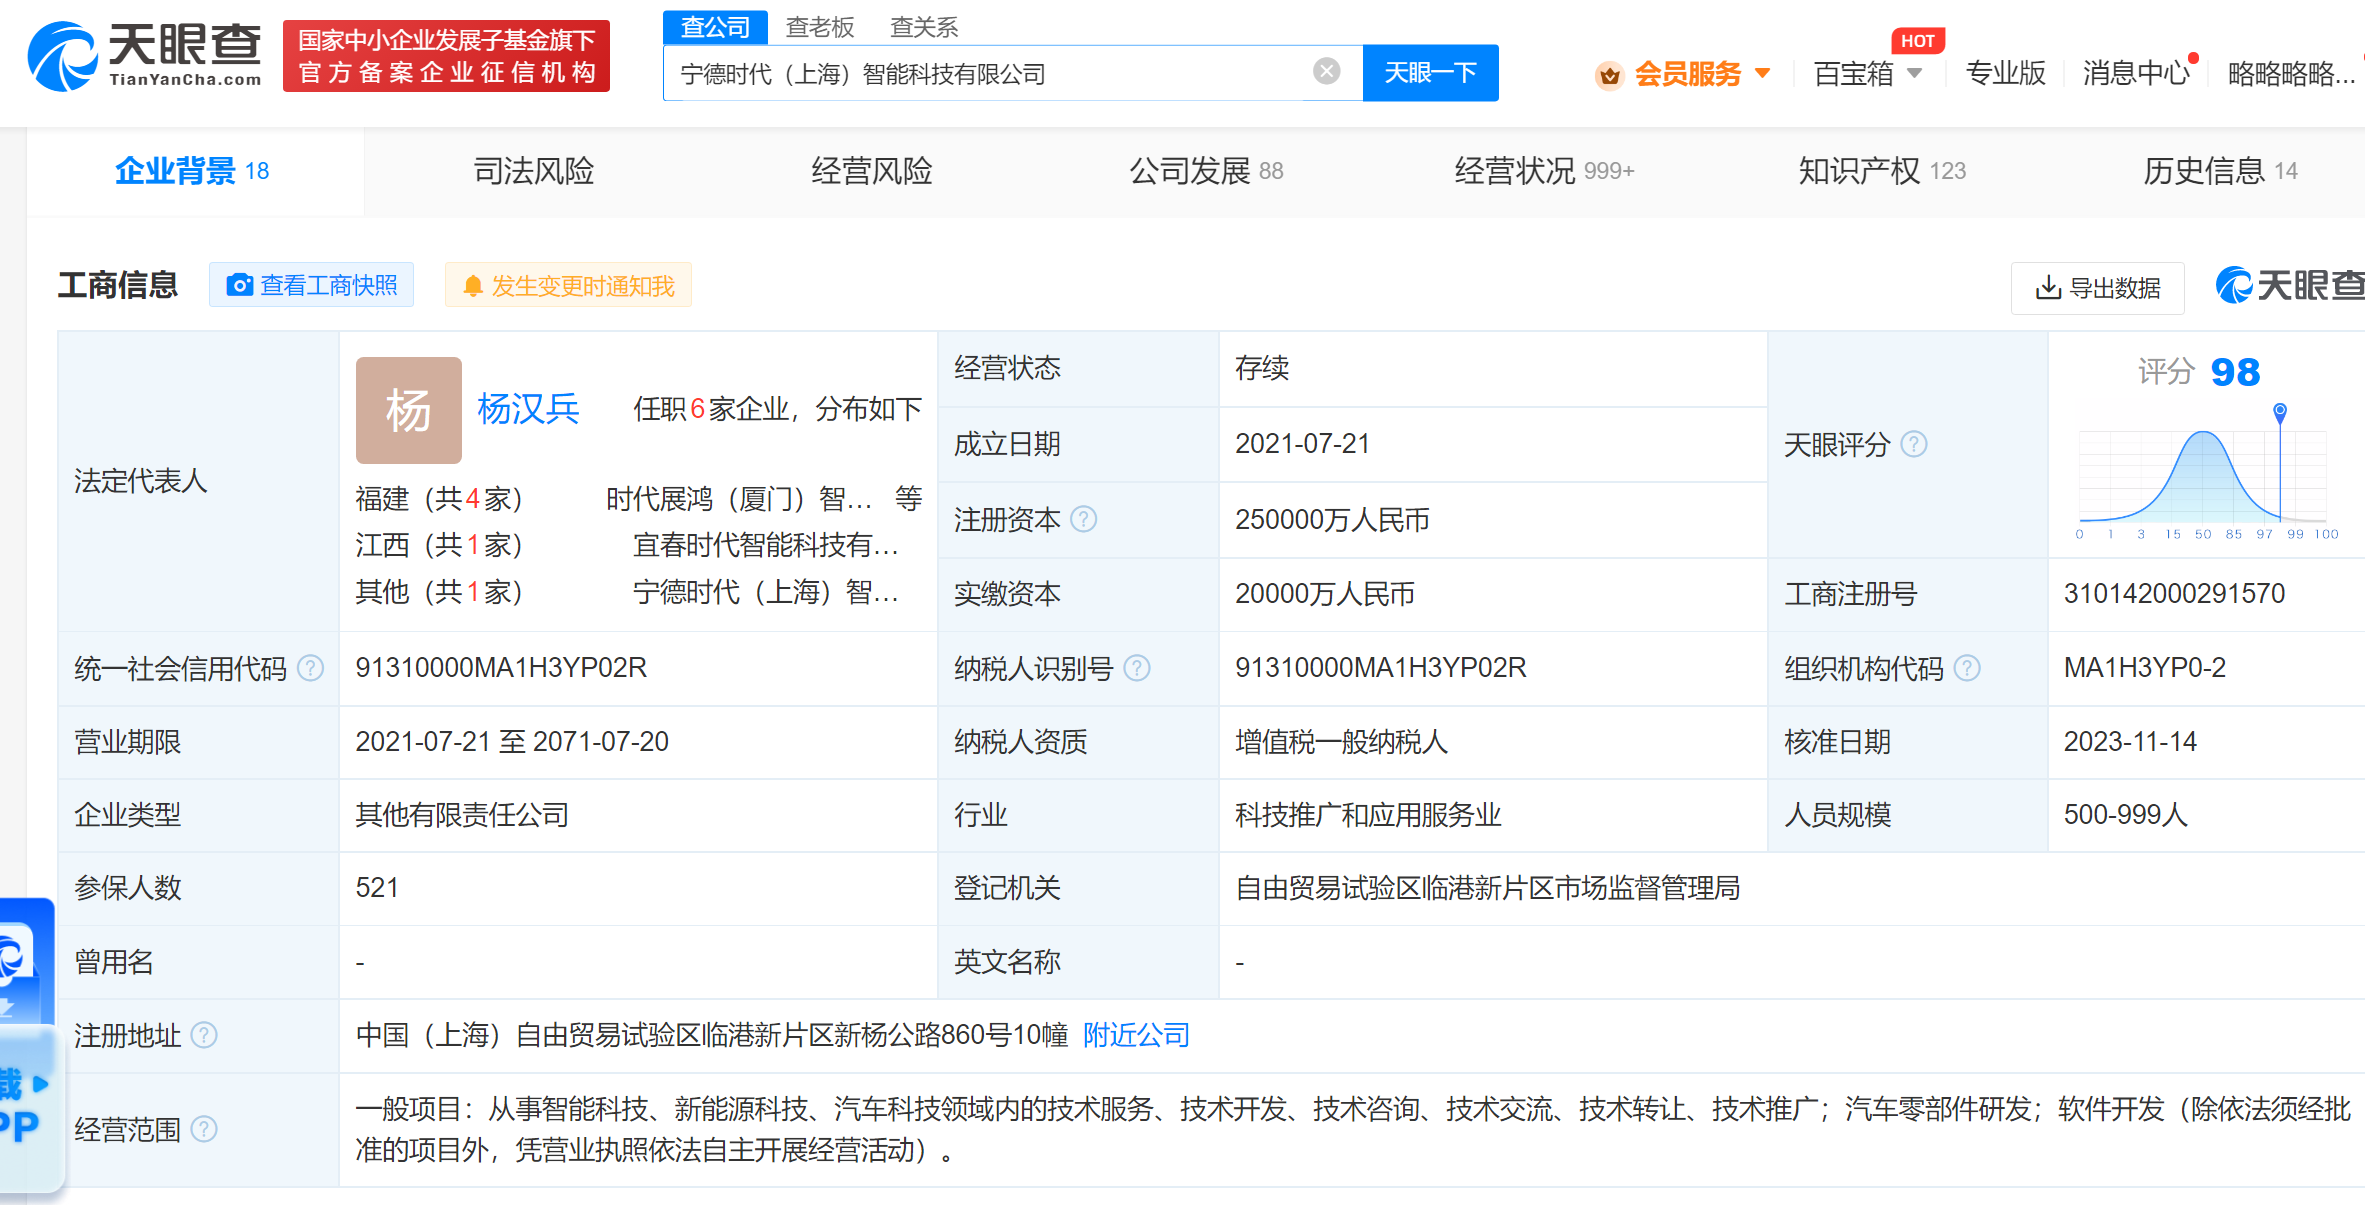 宁德时代上海智能科技公司增资至25亿